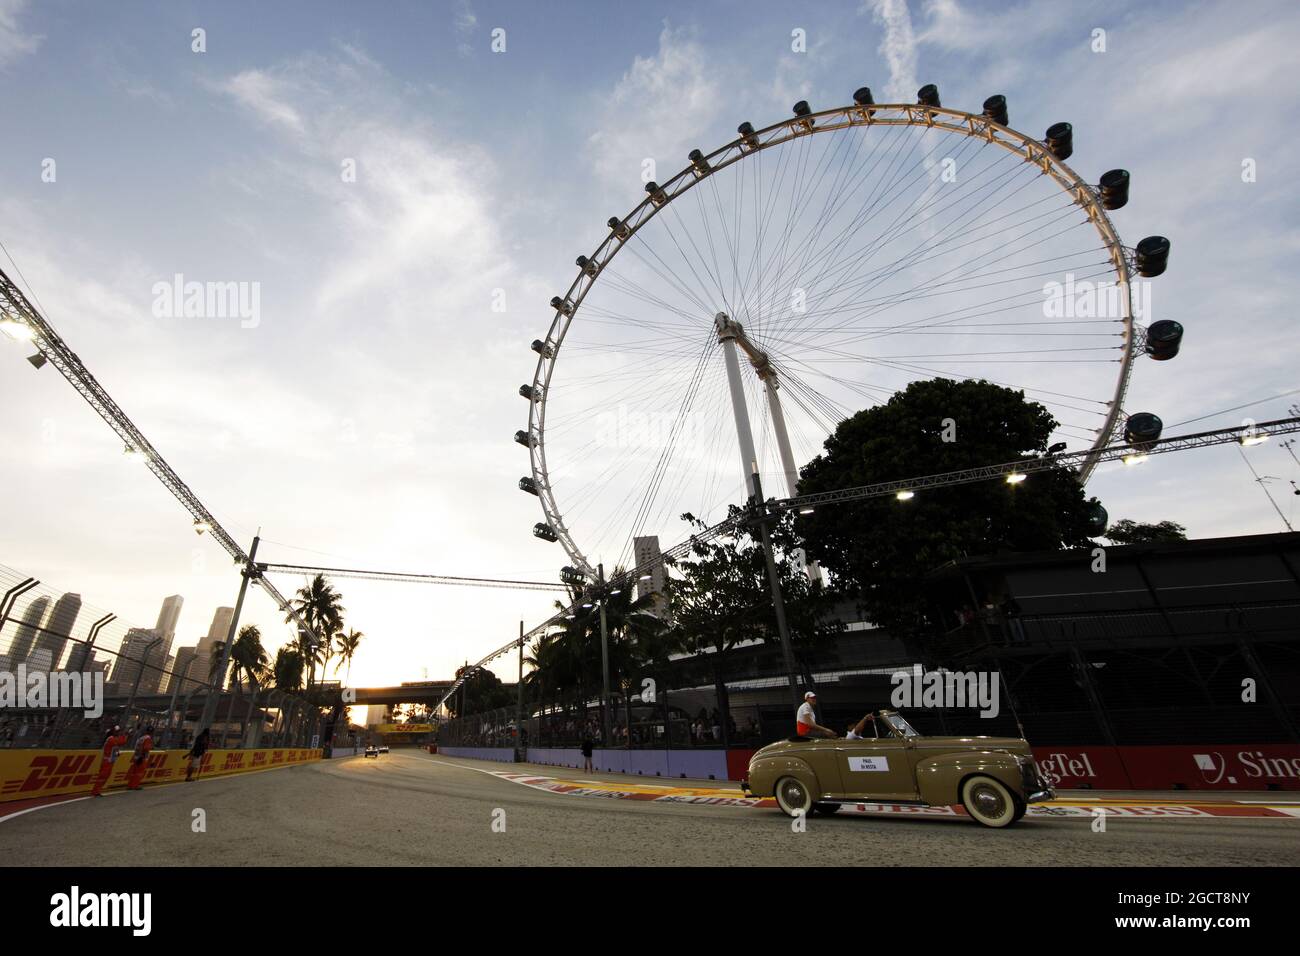 Paul di resta (GBR) Sahara Force India F1 sulla sfilata piloti. Gran Premio di Singapore, domenica 22 settembre 2013. Circuito Marina Bay Street, Singapore. Foto Stock